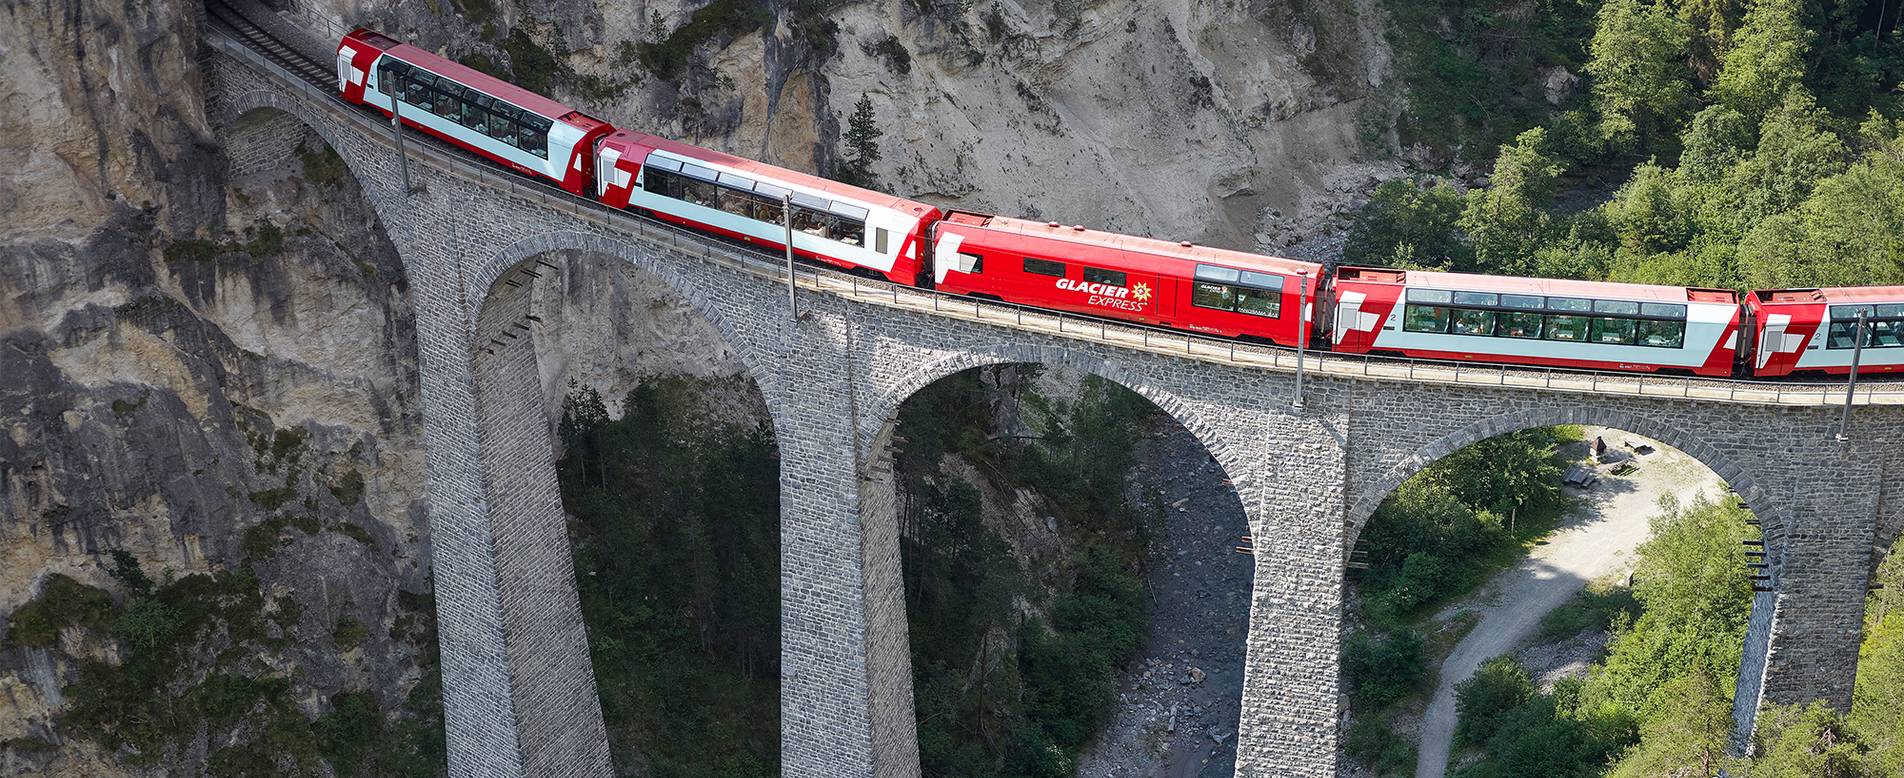 De Glacier Express is een van de meest schilderachtige Treinreizen in Europa